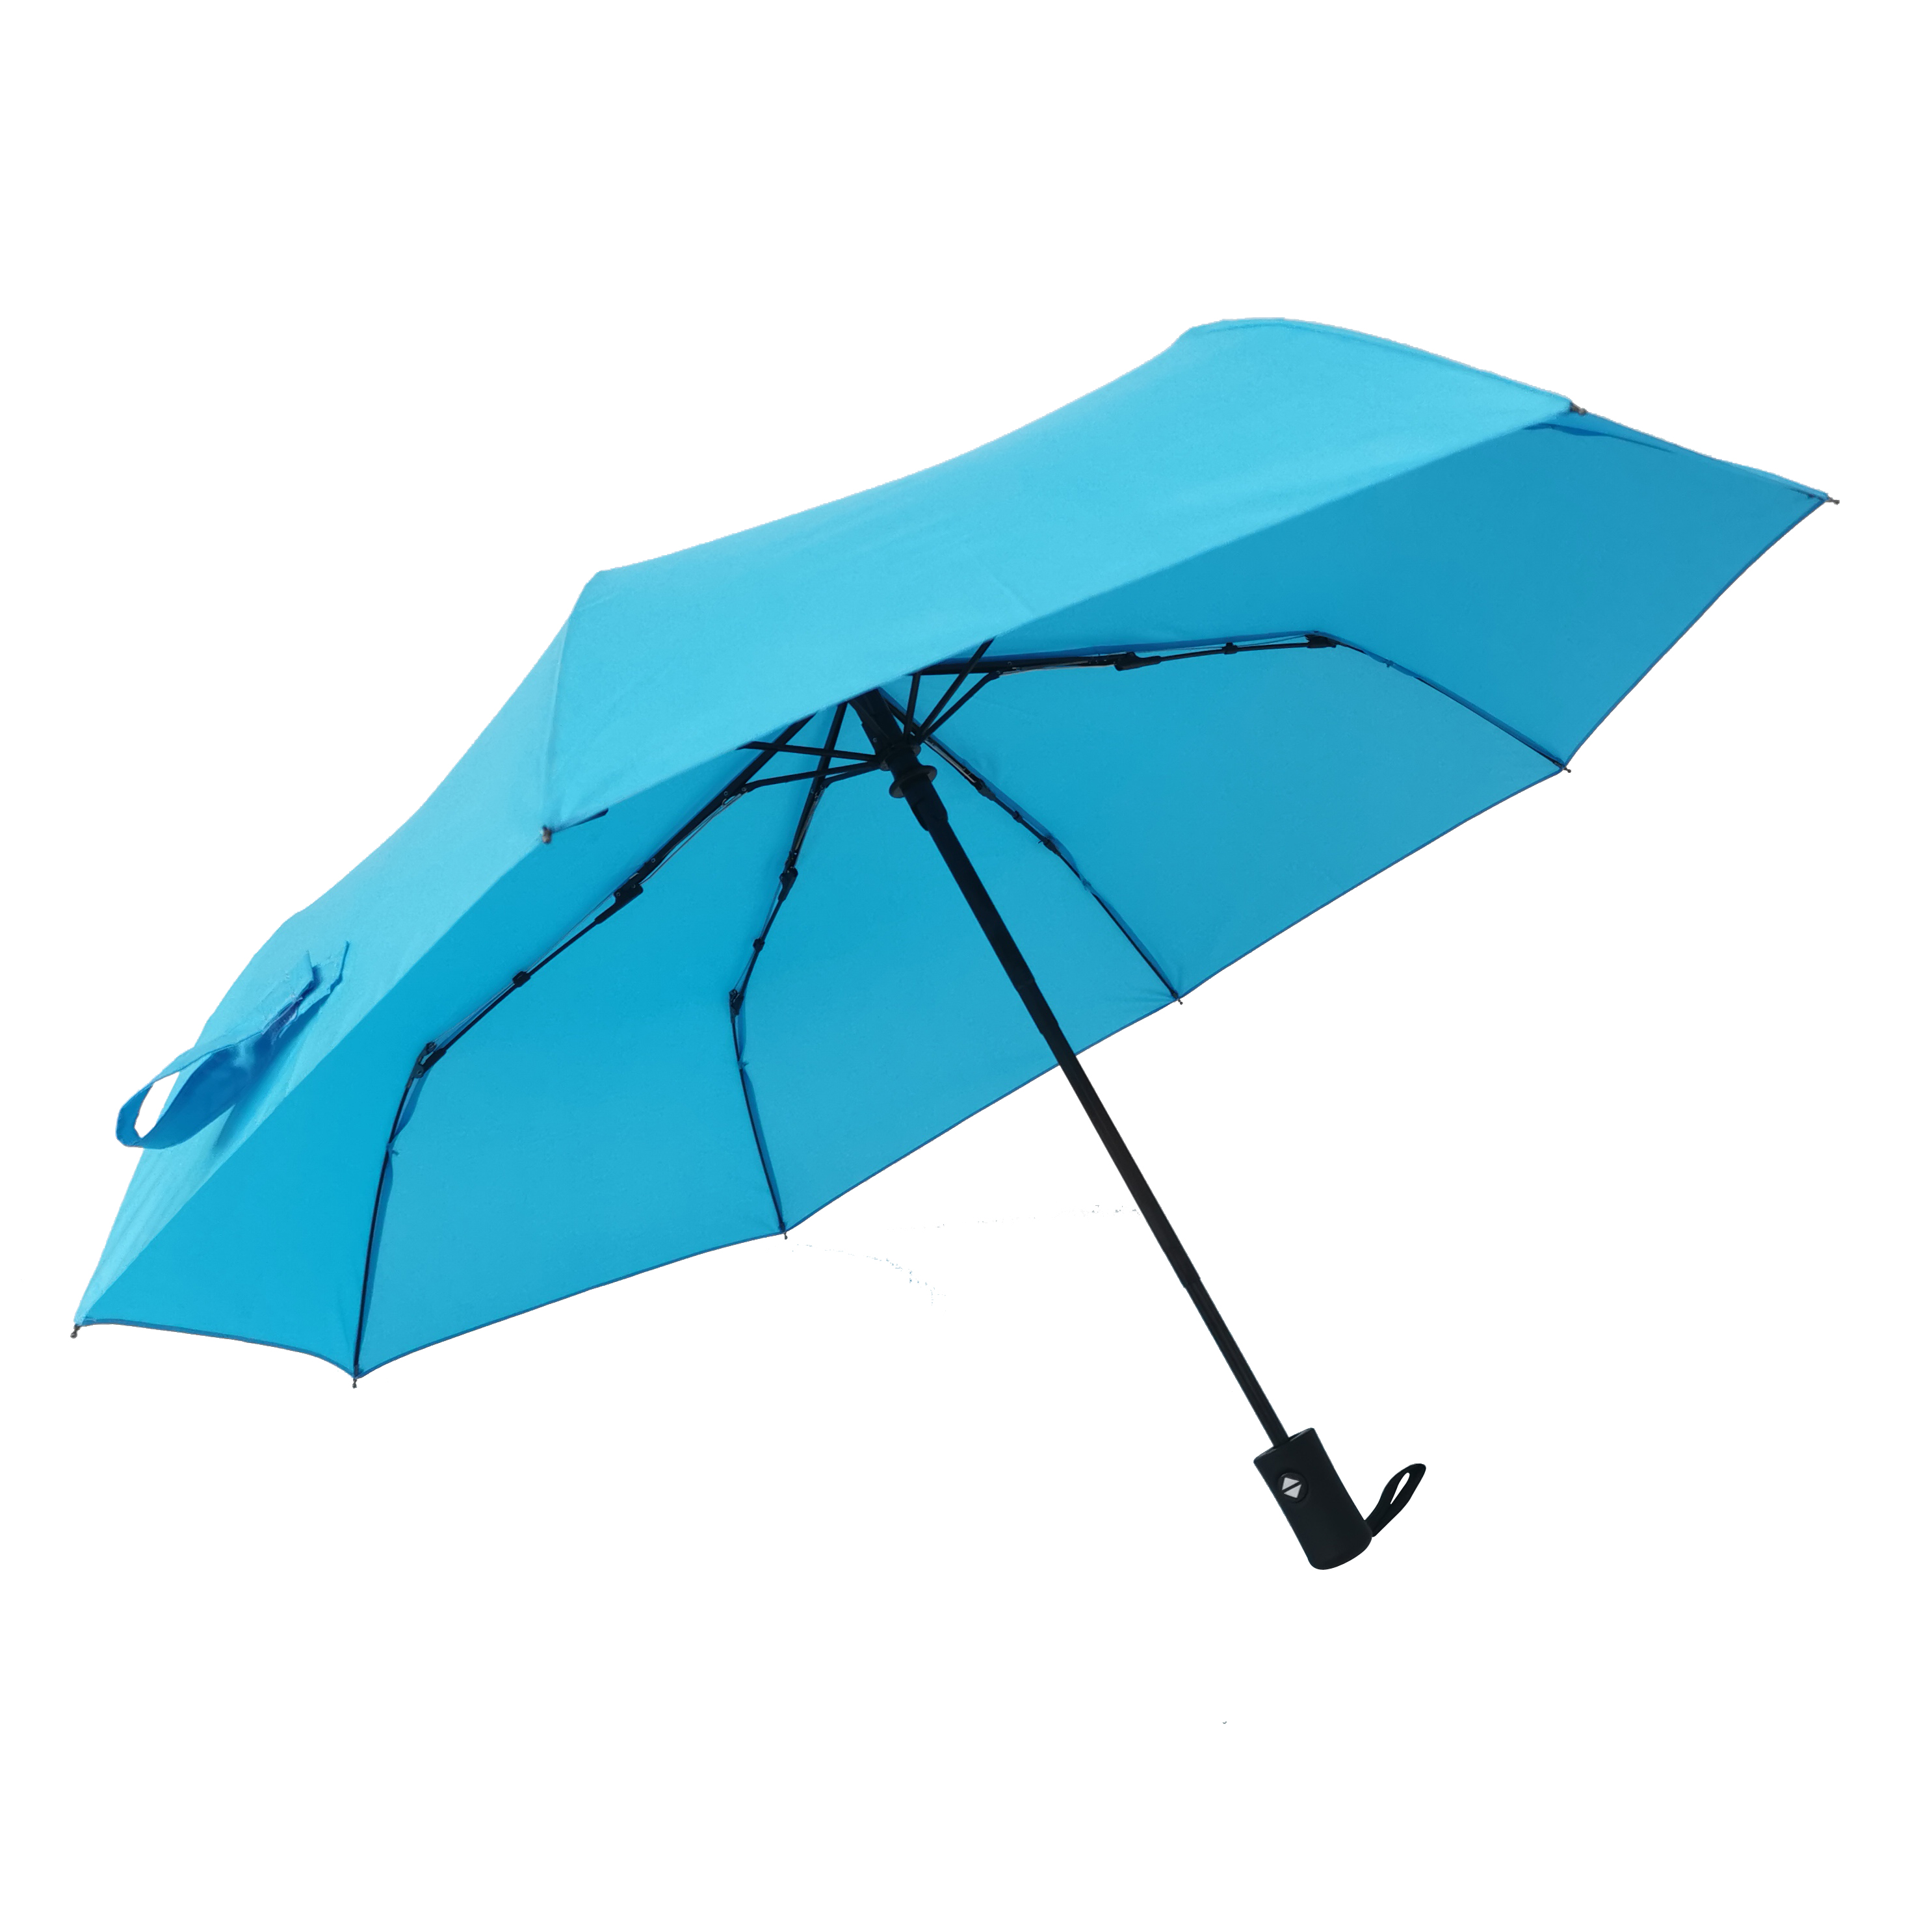 https://www.hodaumbrella.com/21-maatwerk-volautomatische-3-opvouwbare-sunrain-paraplu-voor-volwassen-polyester-pongee-plastic-handvat-6k-8k-product/